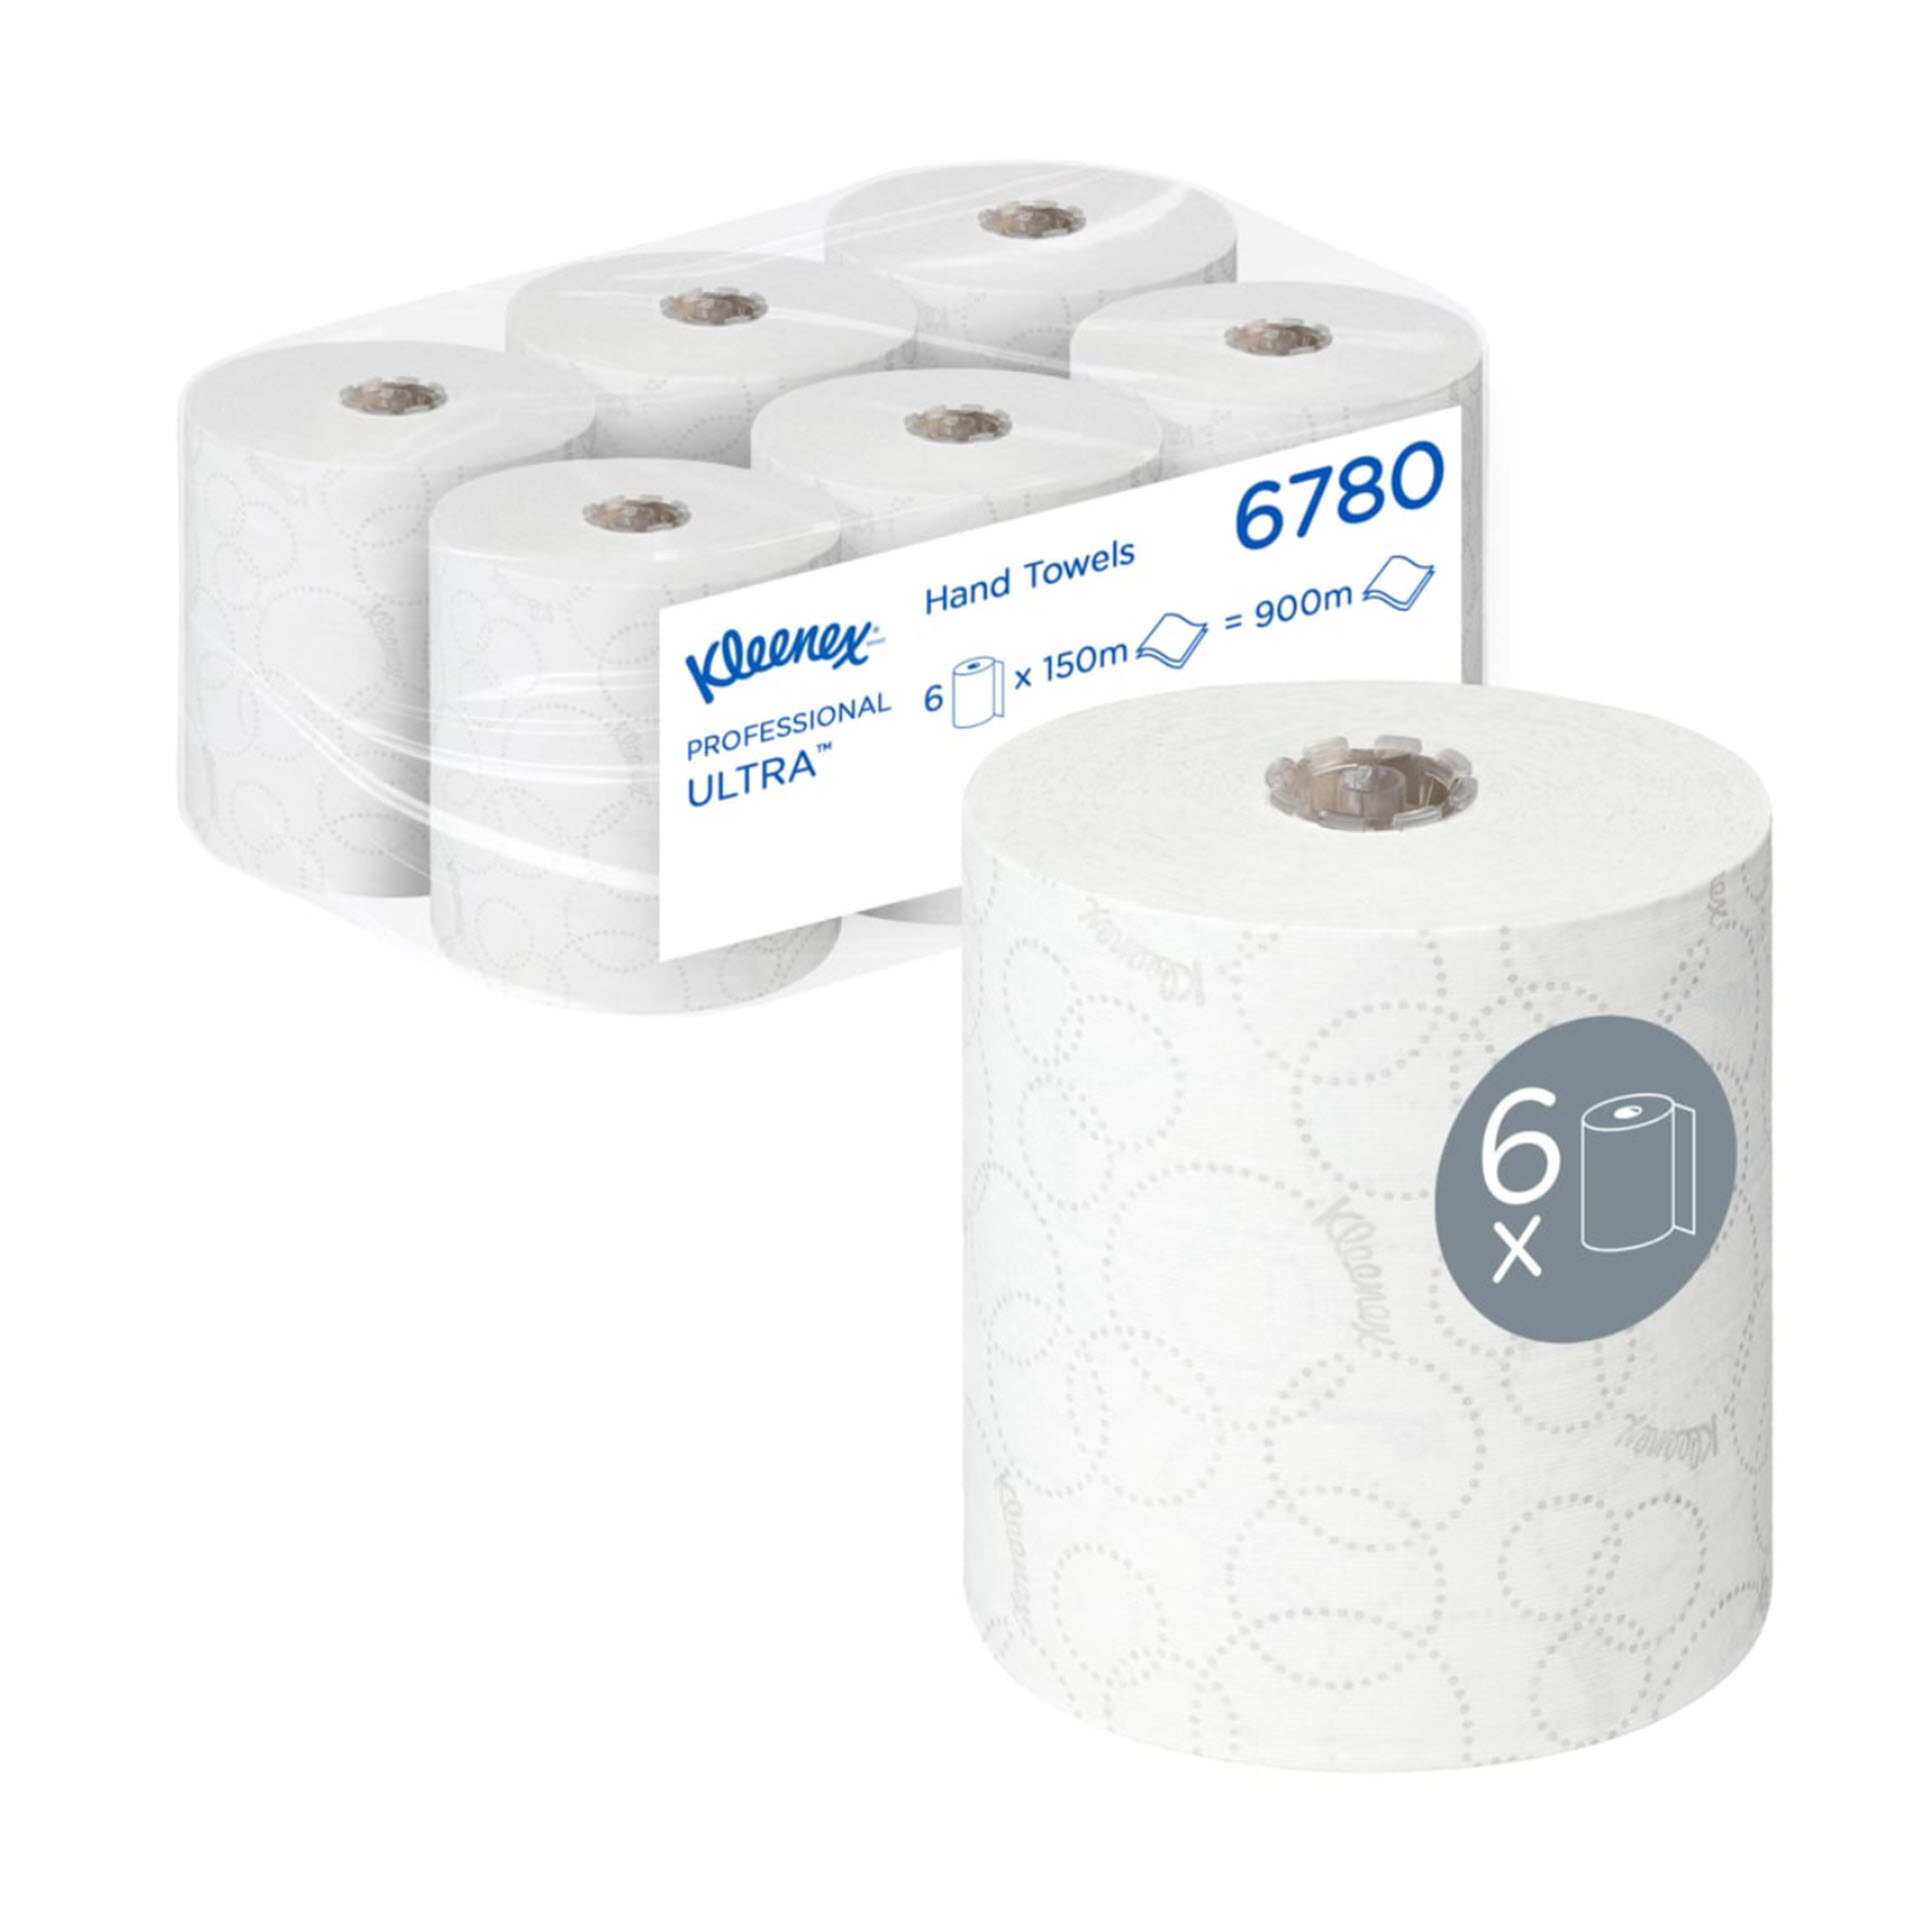 KCP Kleenex® Ultra™ Rollenpapiertücher 6780 – 2-lagige Rollenhandtücher – 6 x 150 m weiße Papiertuchrollen